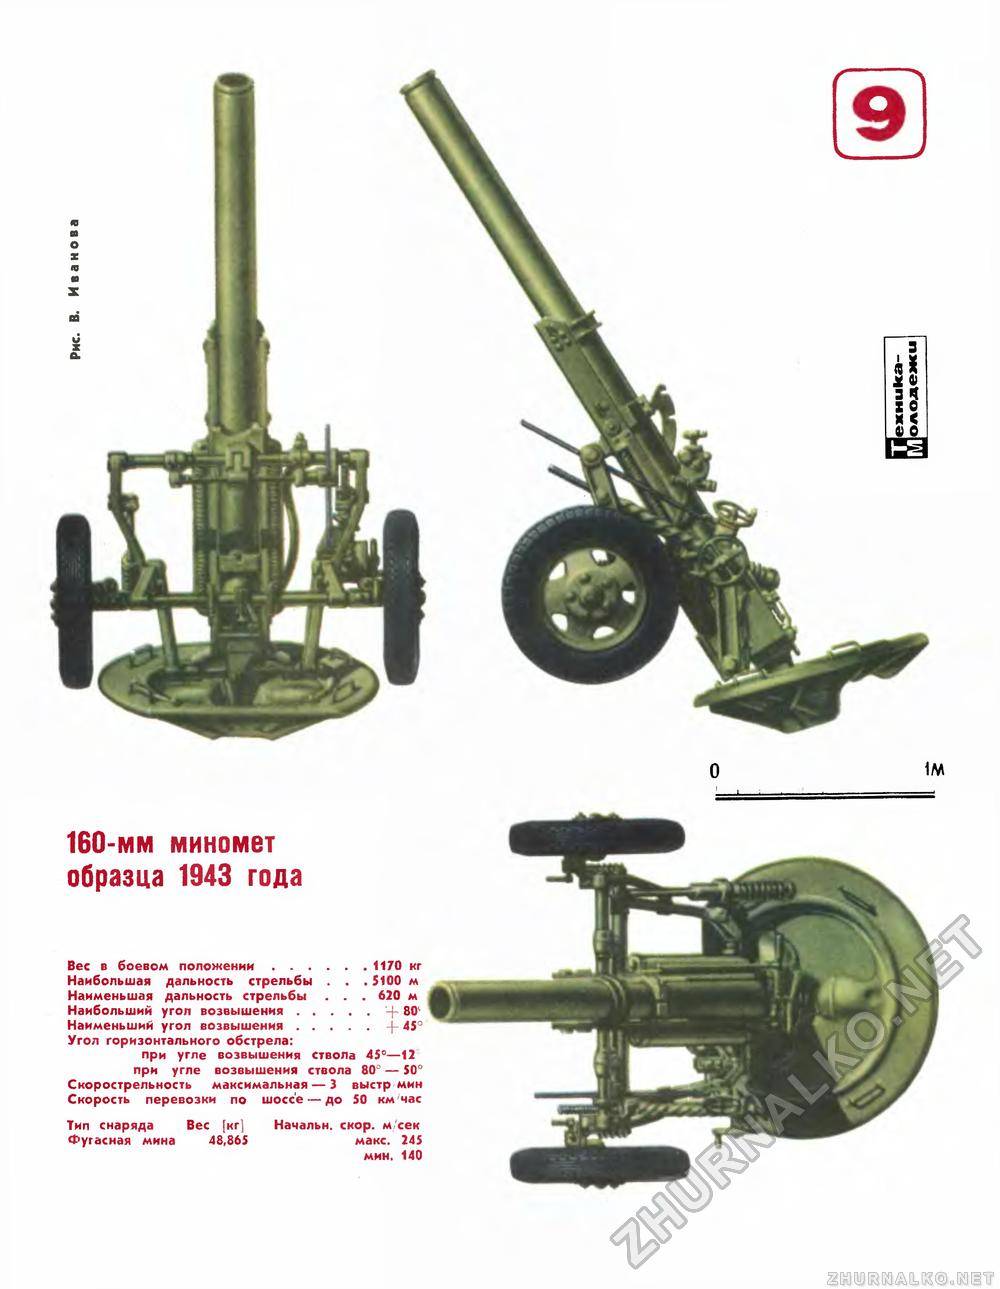 Миномет м 160 – 160-мм дивизионный миномёт образца 1949 года (м-160) — википедия (с комментариями)